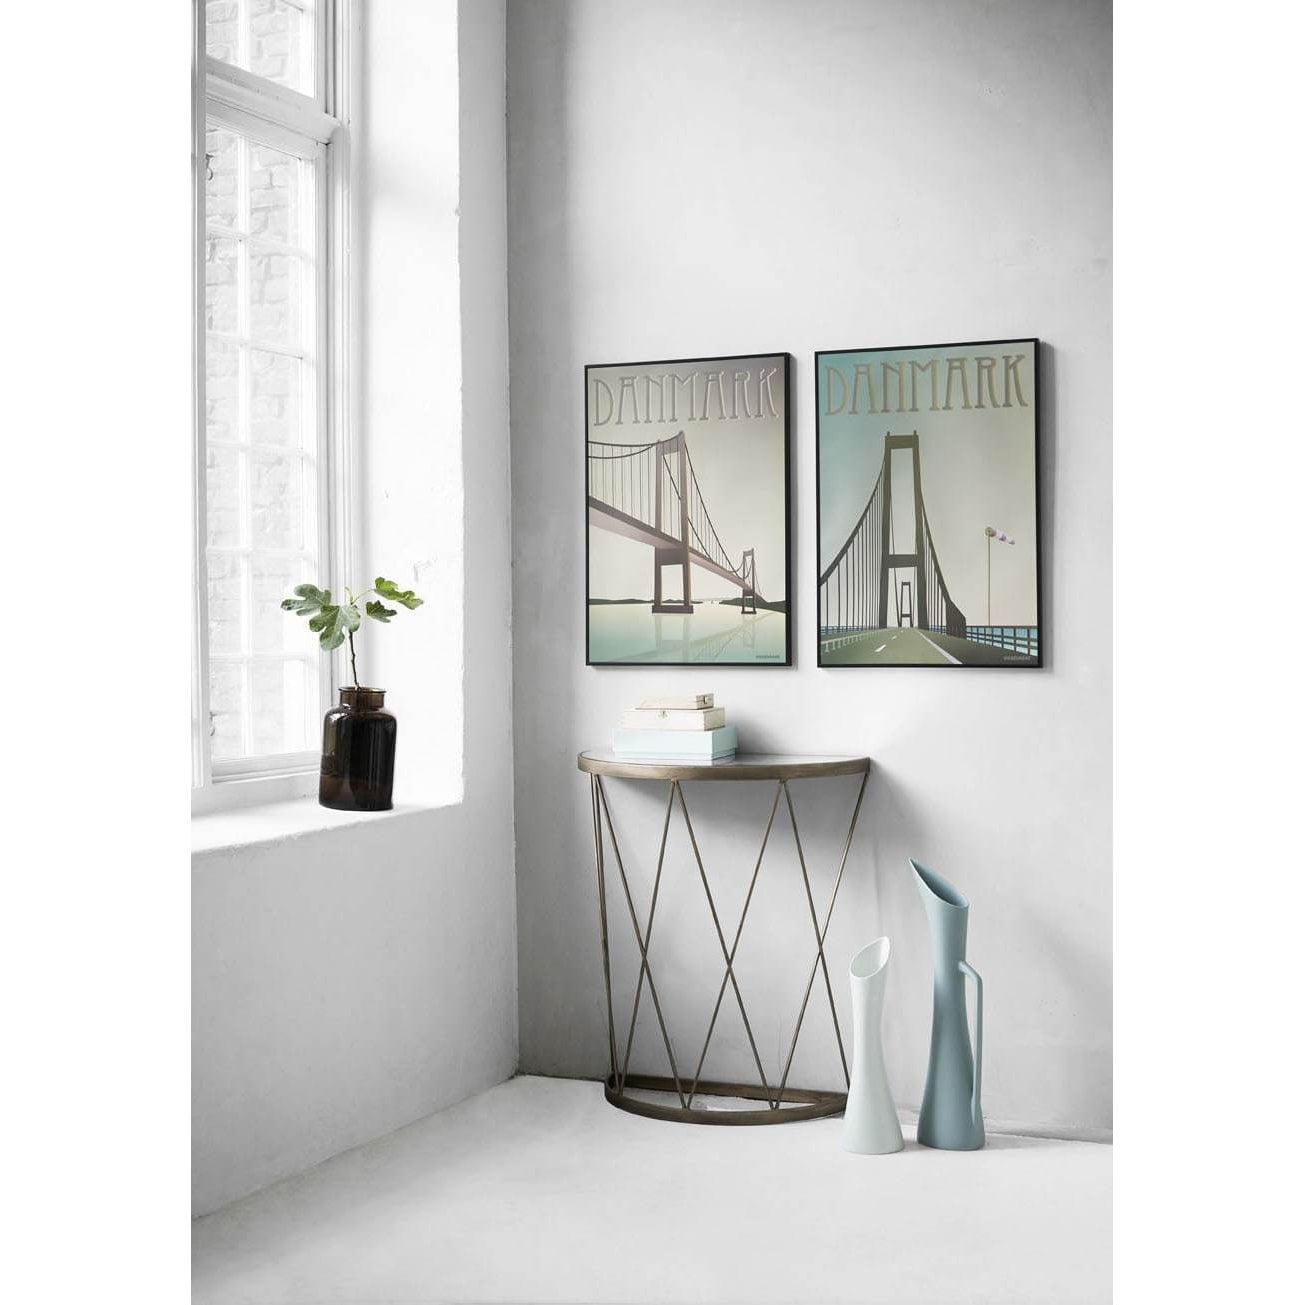 Vissevasse Danmark Storebærts Bridge veggspjald, 15 x21 cm